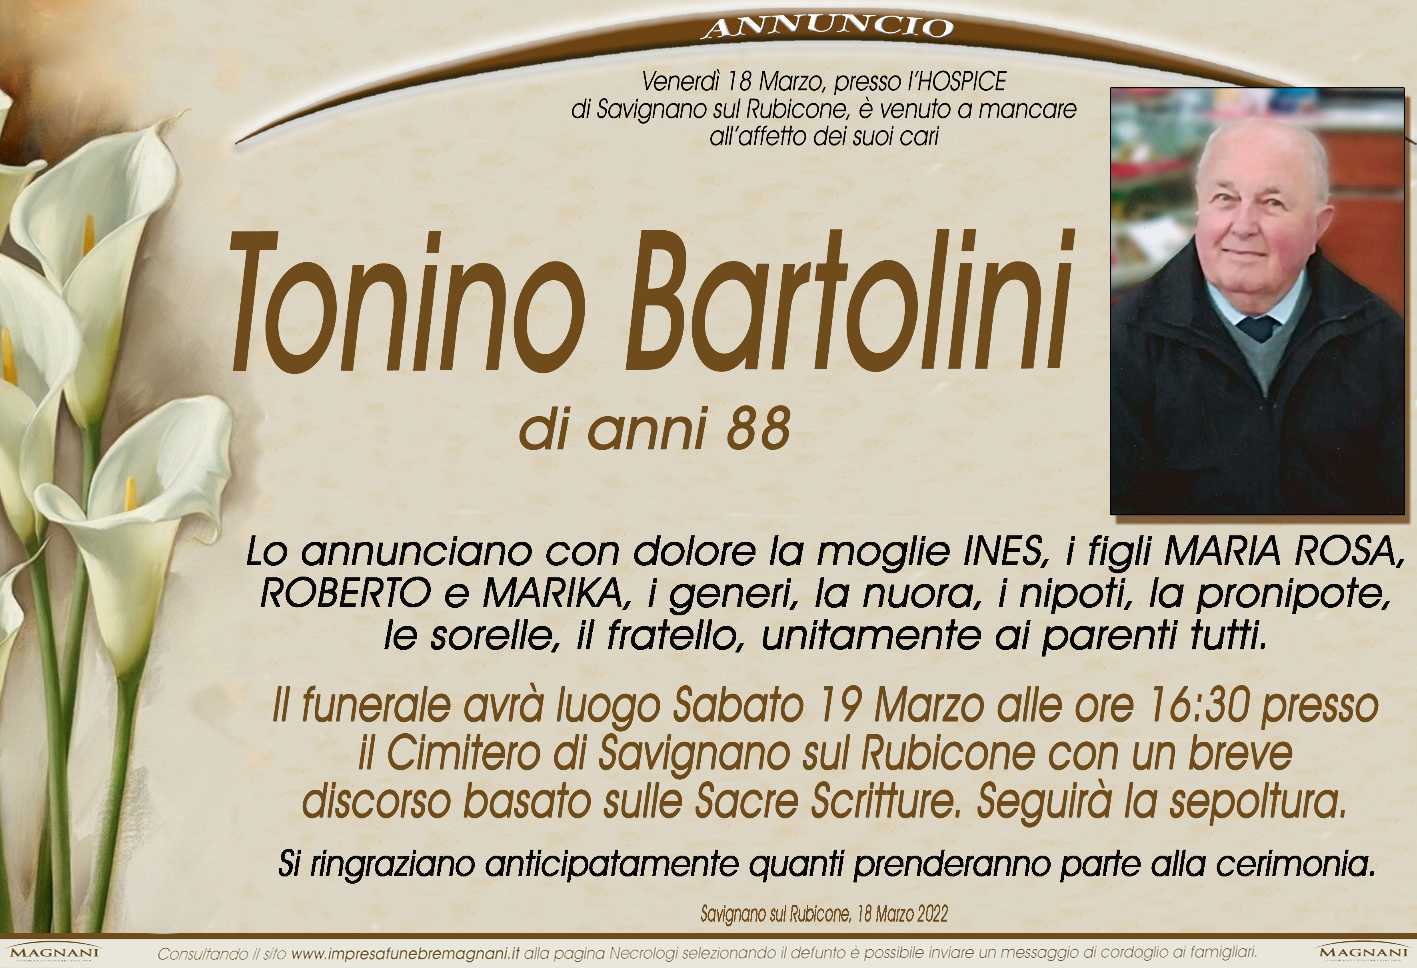 Tonino Bartolini